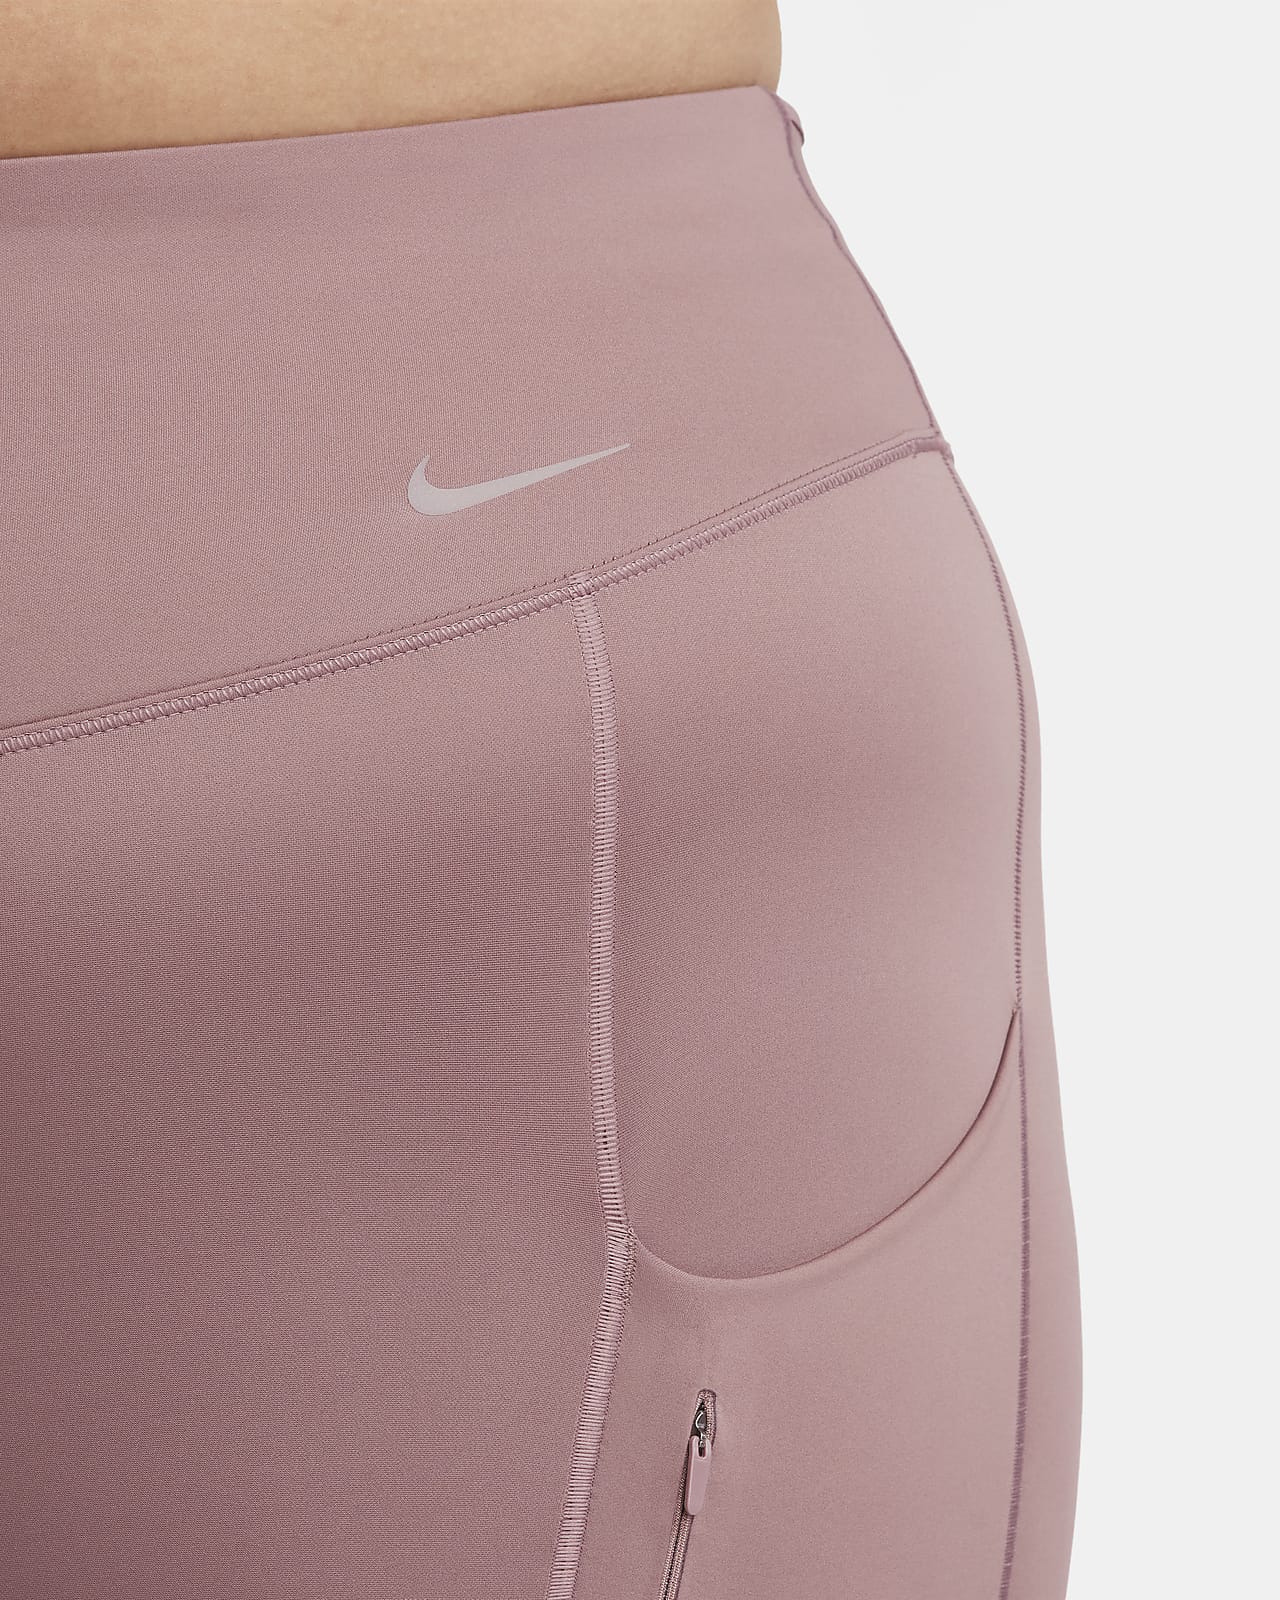 ad  Nike haul + Nike go leggings wear test! @NikeWomen 